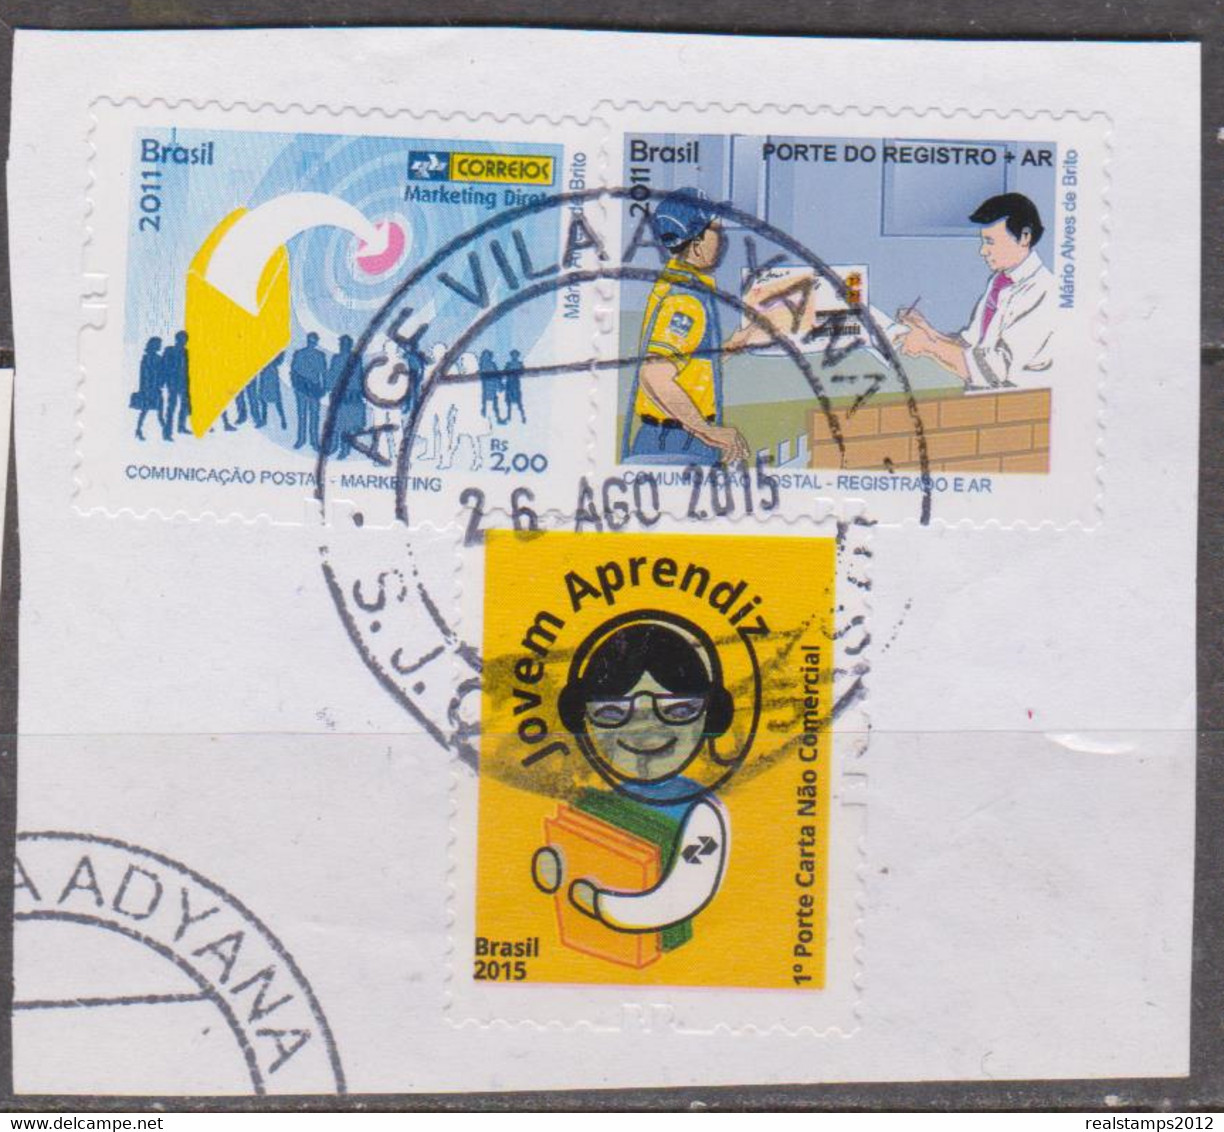 Brasil -2011/2015 -Comunicação Postal-Registrado E Ar + Jovem Aprendiz, 1ºporte Carta Não Com (S/ Sobscrito) (o)  RHM Nº - Used Stamps